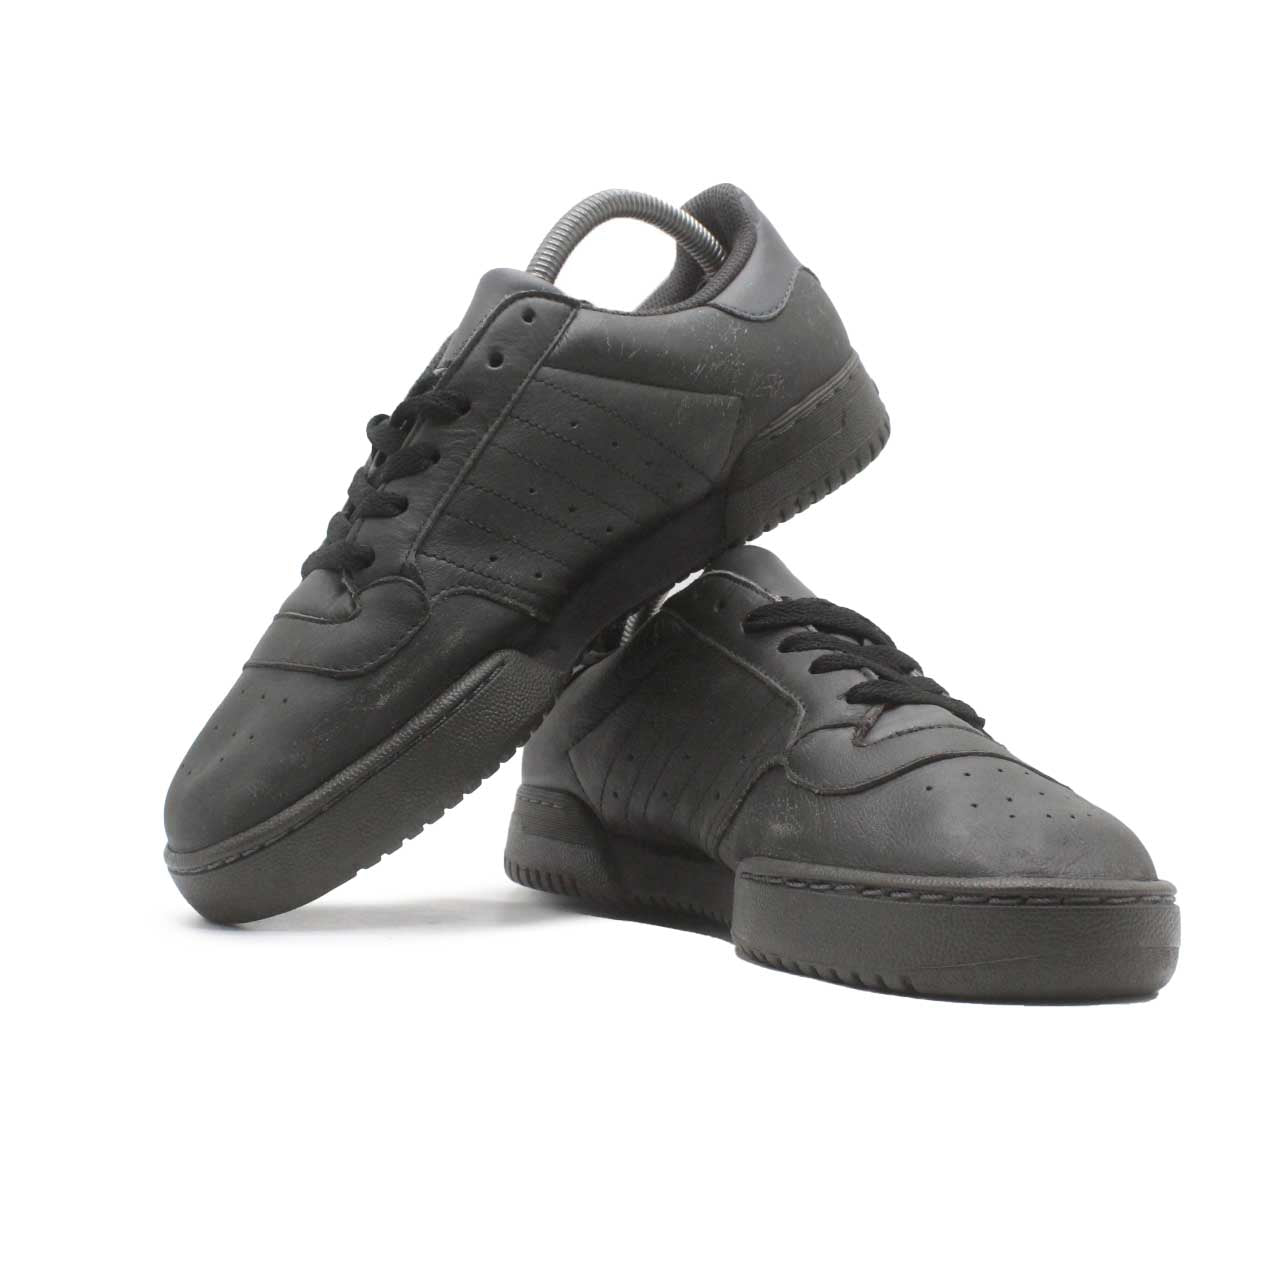 Adidas Yeezy Powerphase Casual Shoe